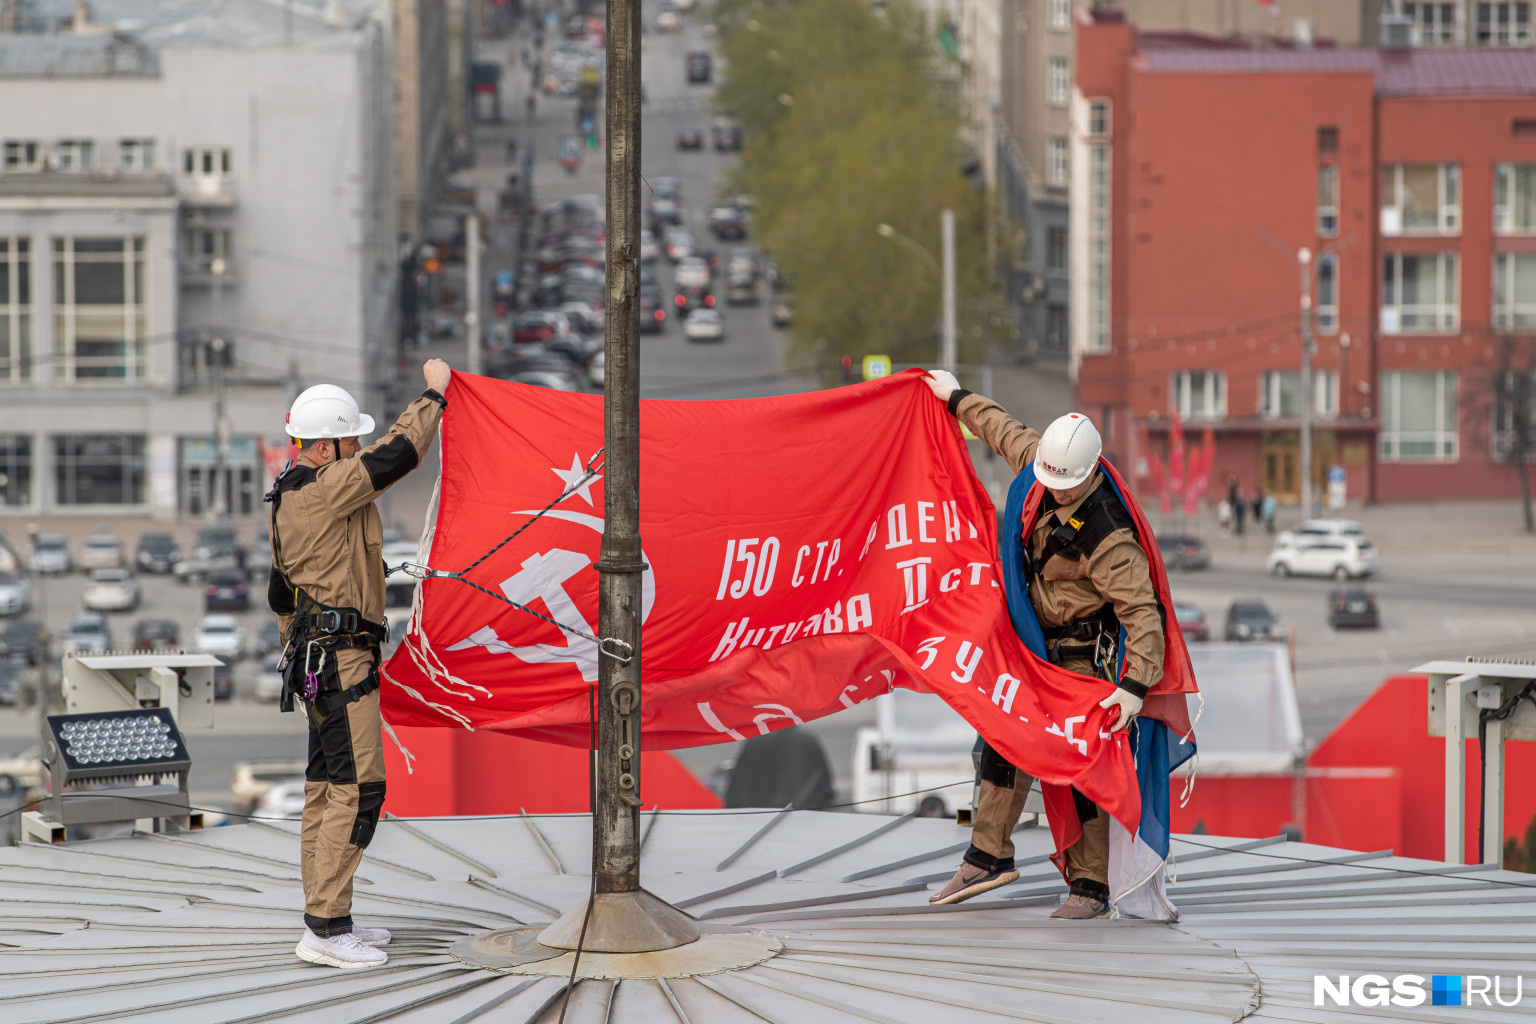 На красном полотнище знамени написано: «150 стр. ордена Кутузова II ст. идрицк. див. 79 C.К. 3 У. А. 1 Б. Ф.» (это же было написано на знамени, которое в 1945 году водрузили на здание рейхстага)